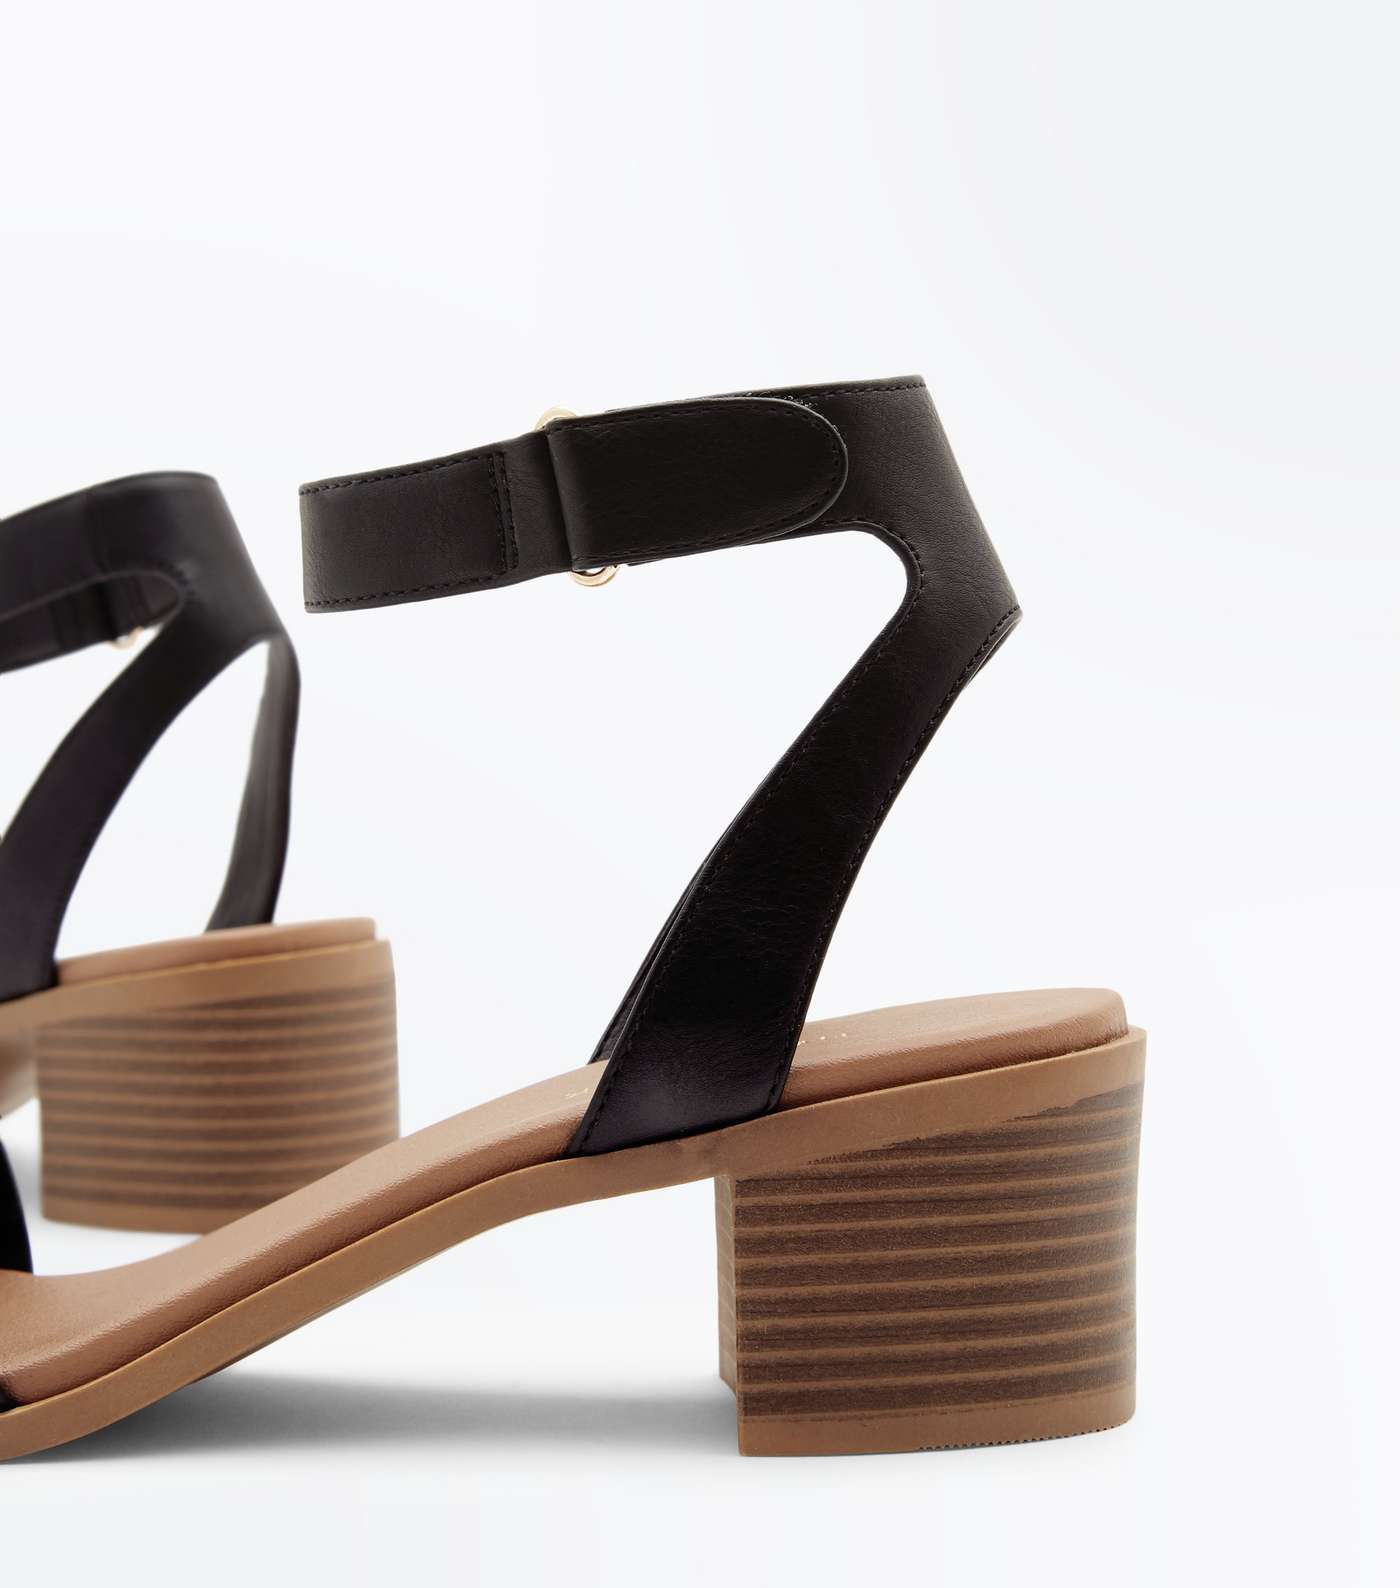 Black Low Block Heel Flexible Sole Sandals Image 4